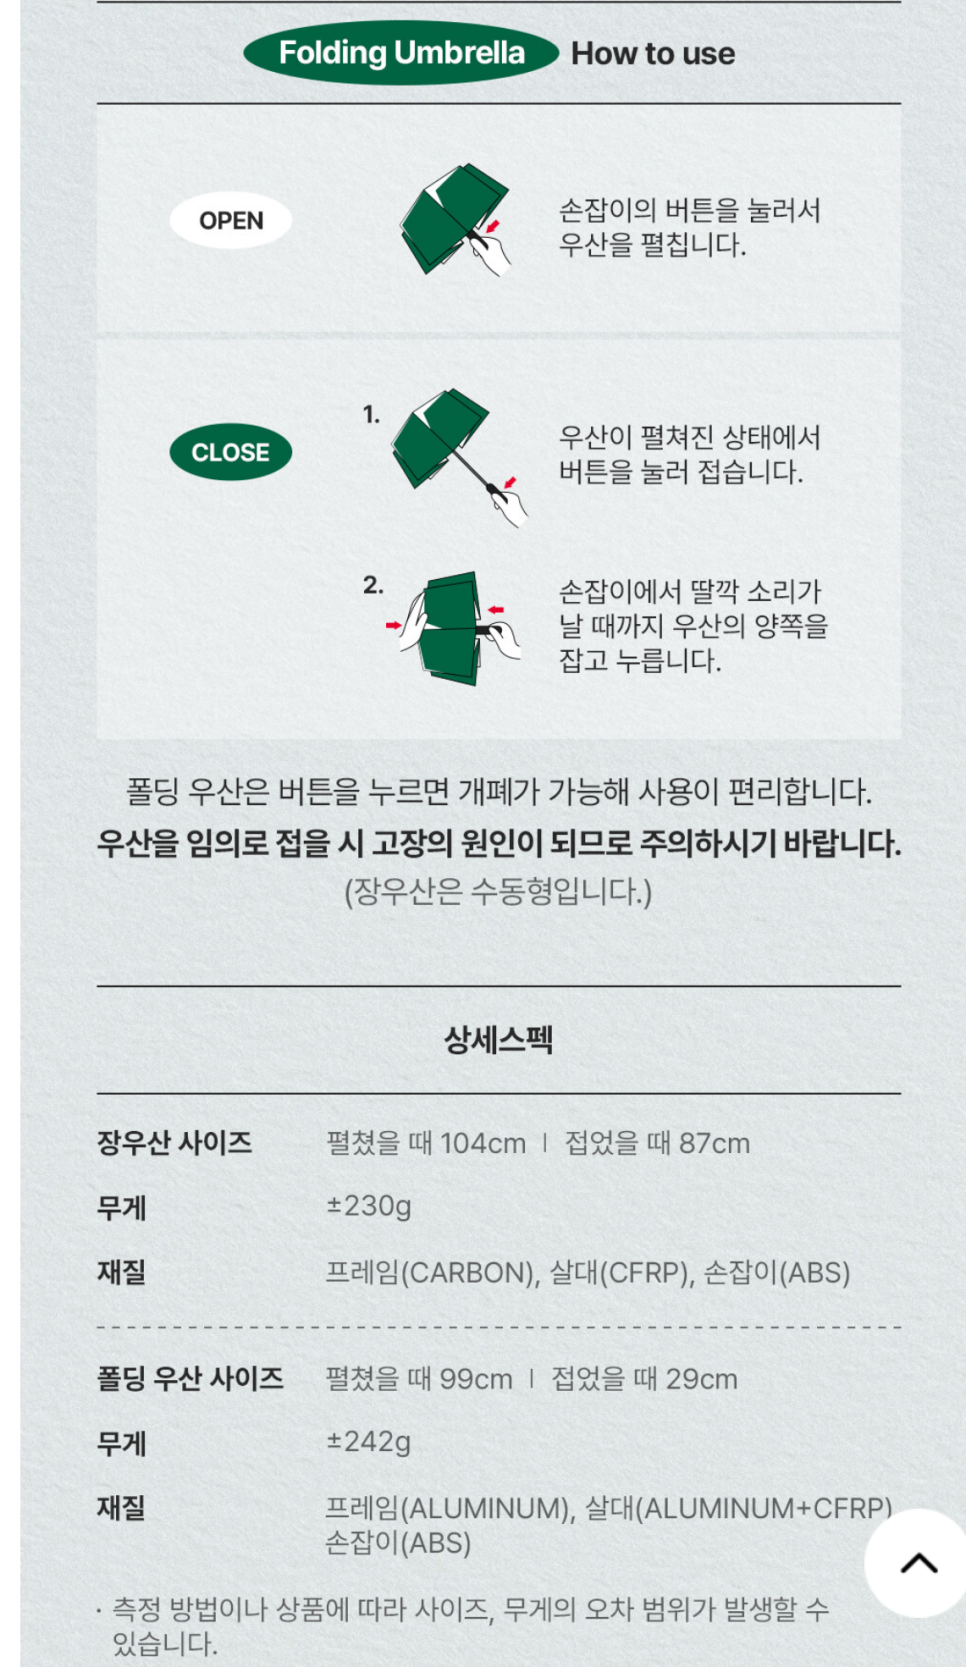 스타벅스 프리퀀시 헌터 판초 파우치 우산 미션음료 적립 기간 실물샷!